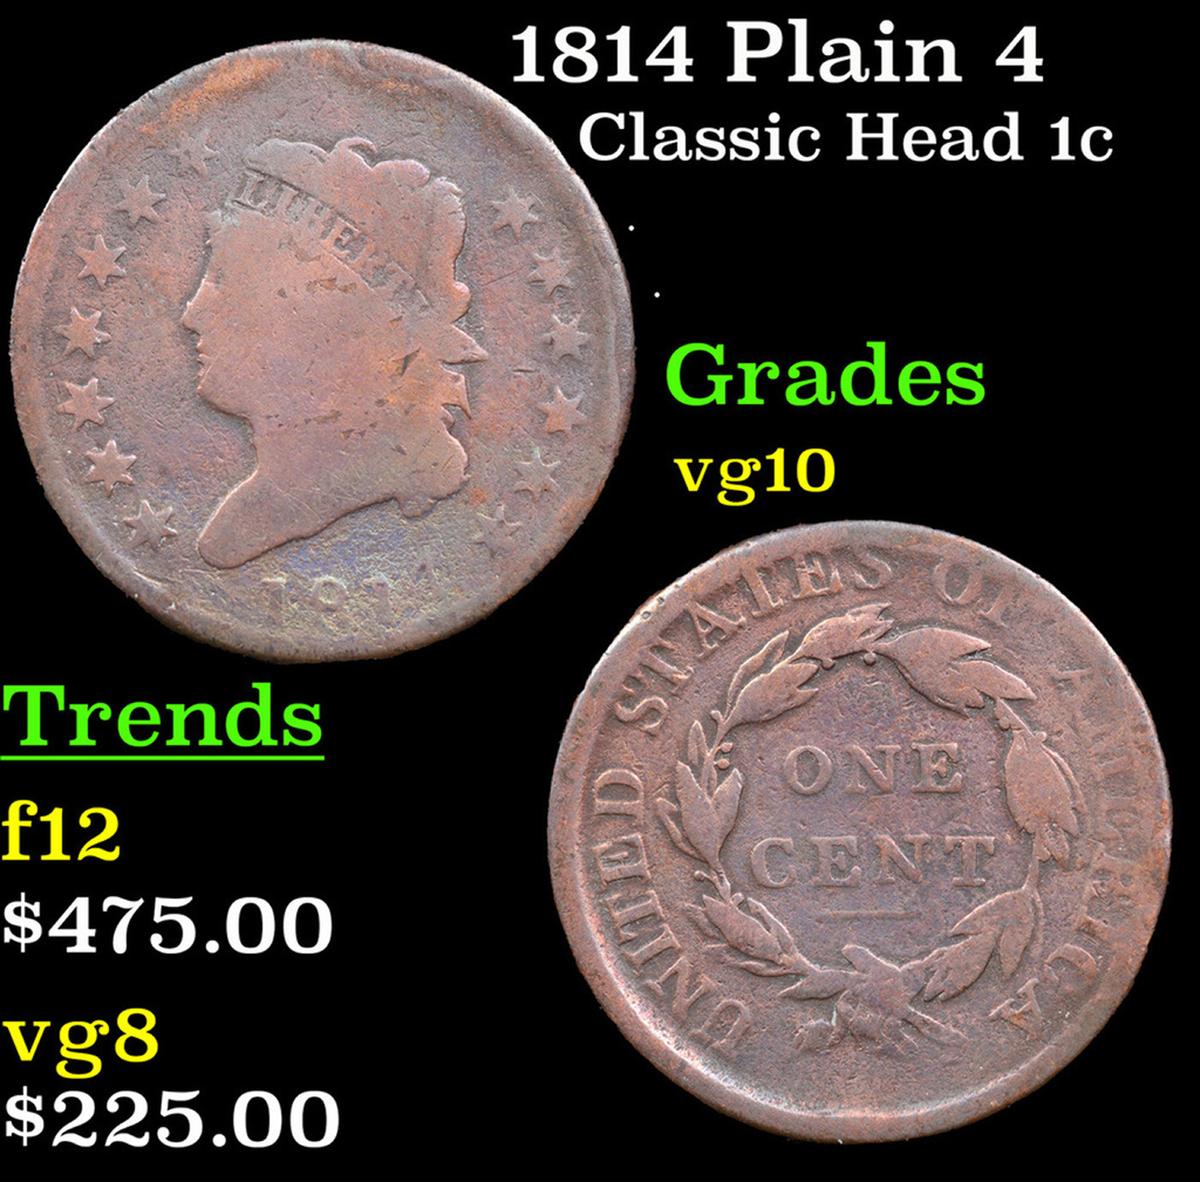 1814 Plain 4 Classic Head Large Cent 1c Grades vg+